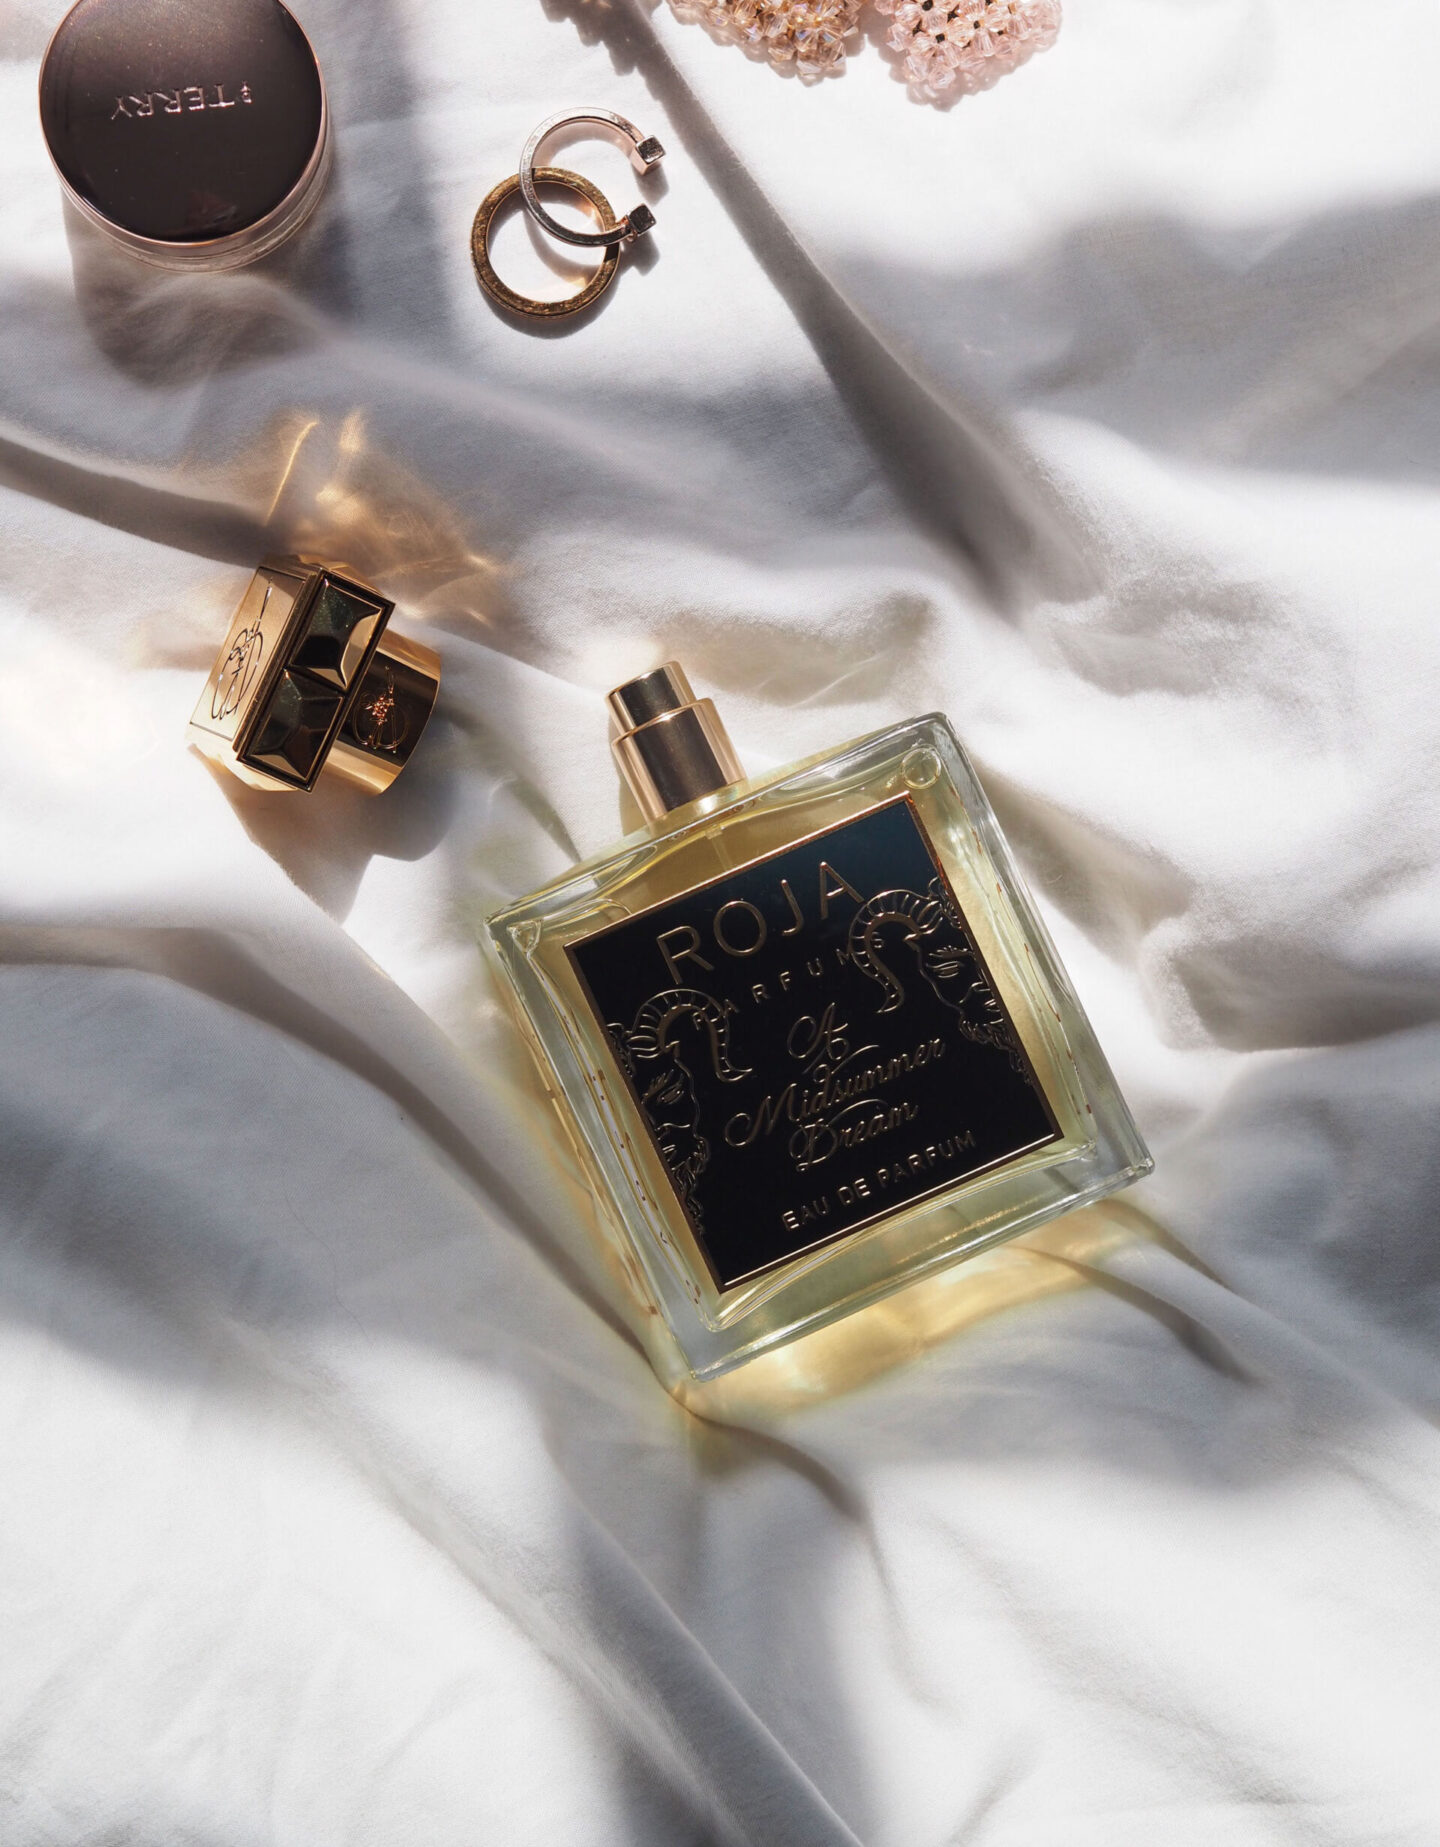 Roja Parfum A Midsummer Dream review